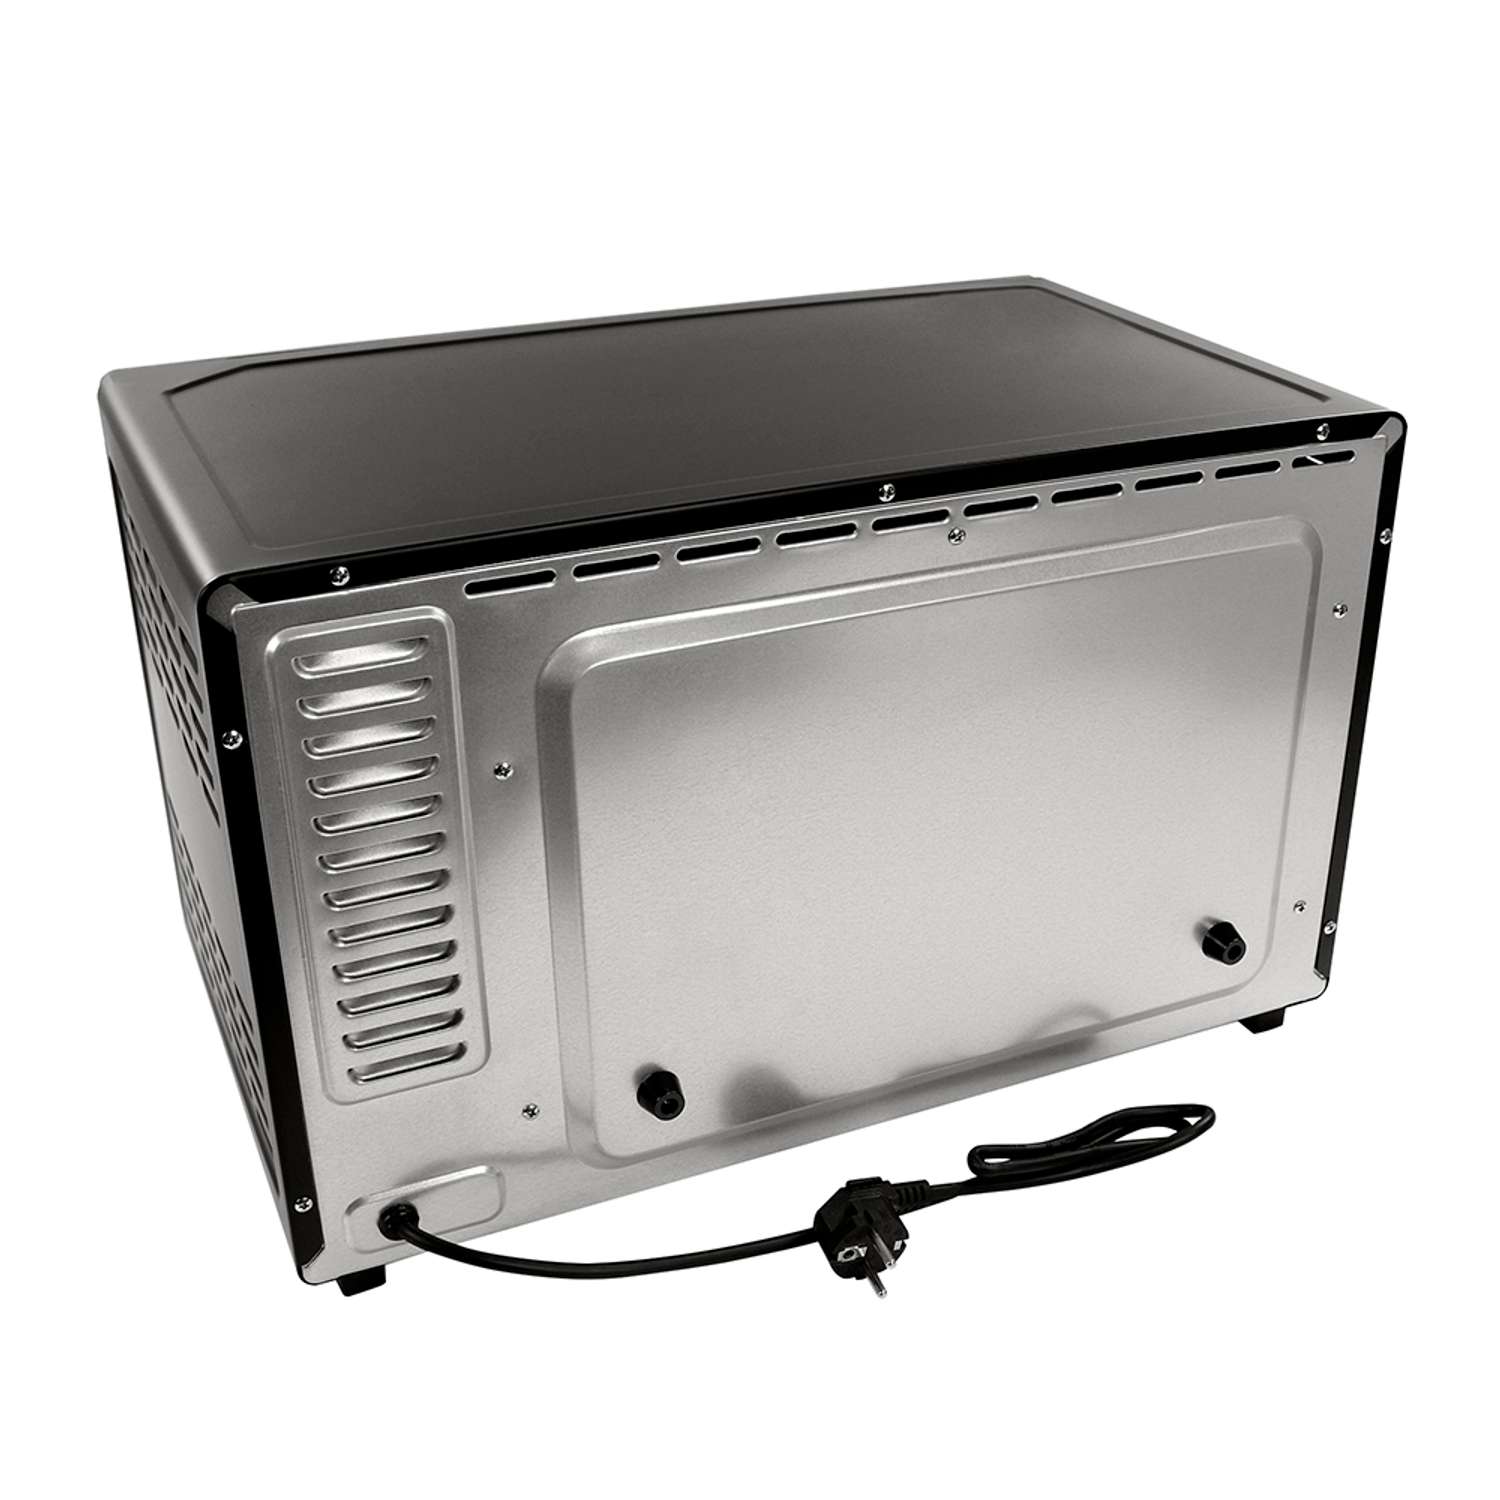 Мини-печь MARTA MT-4281 духовой шкаф 40 литров/конвекция/шашлычница/вертел/эмаль/черный жемчуг - фото 17